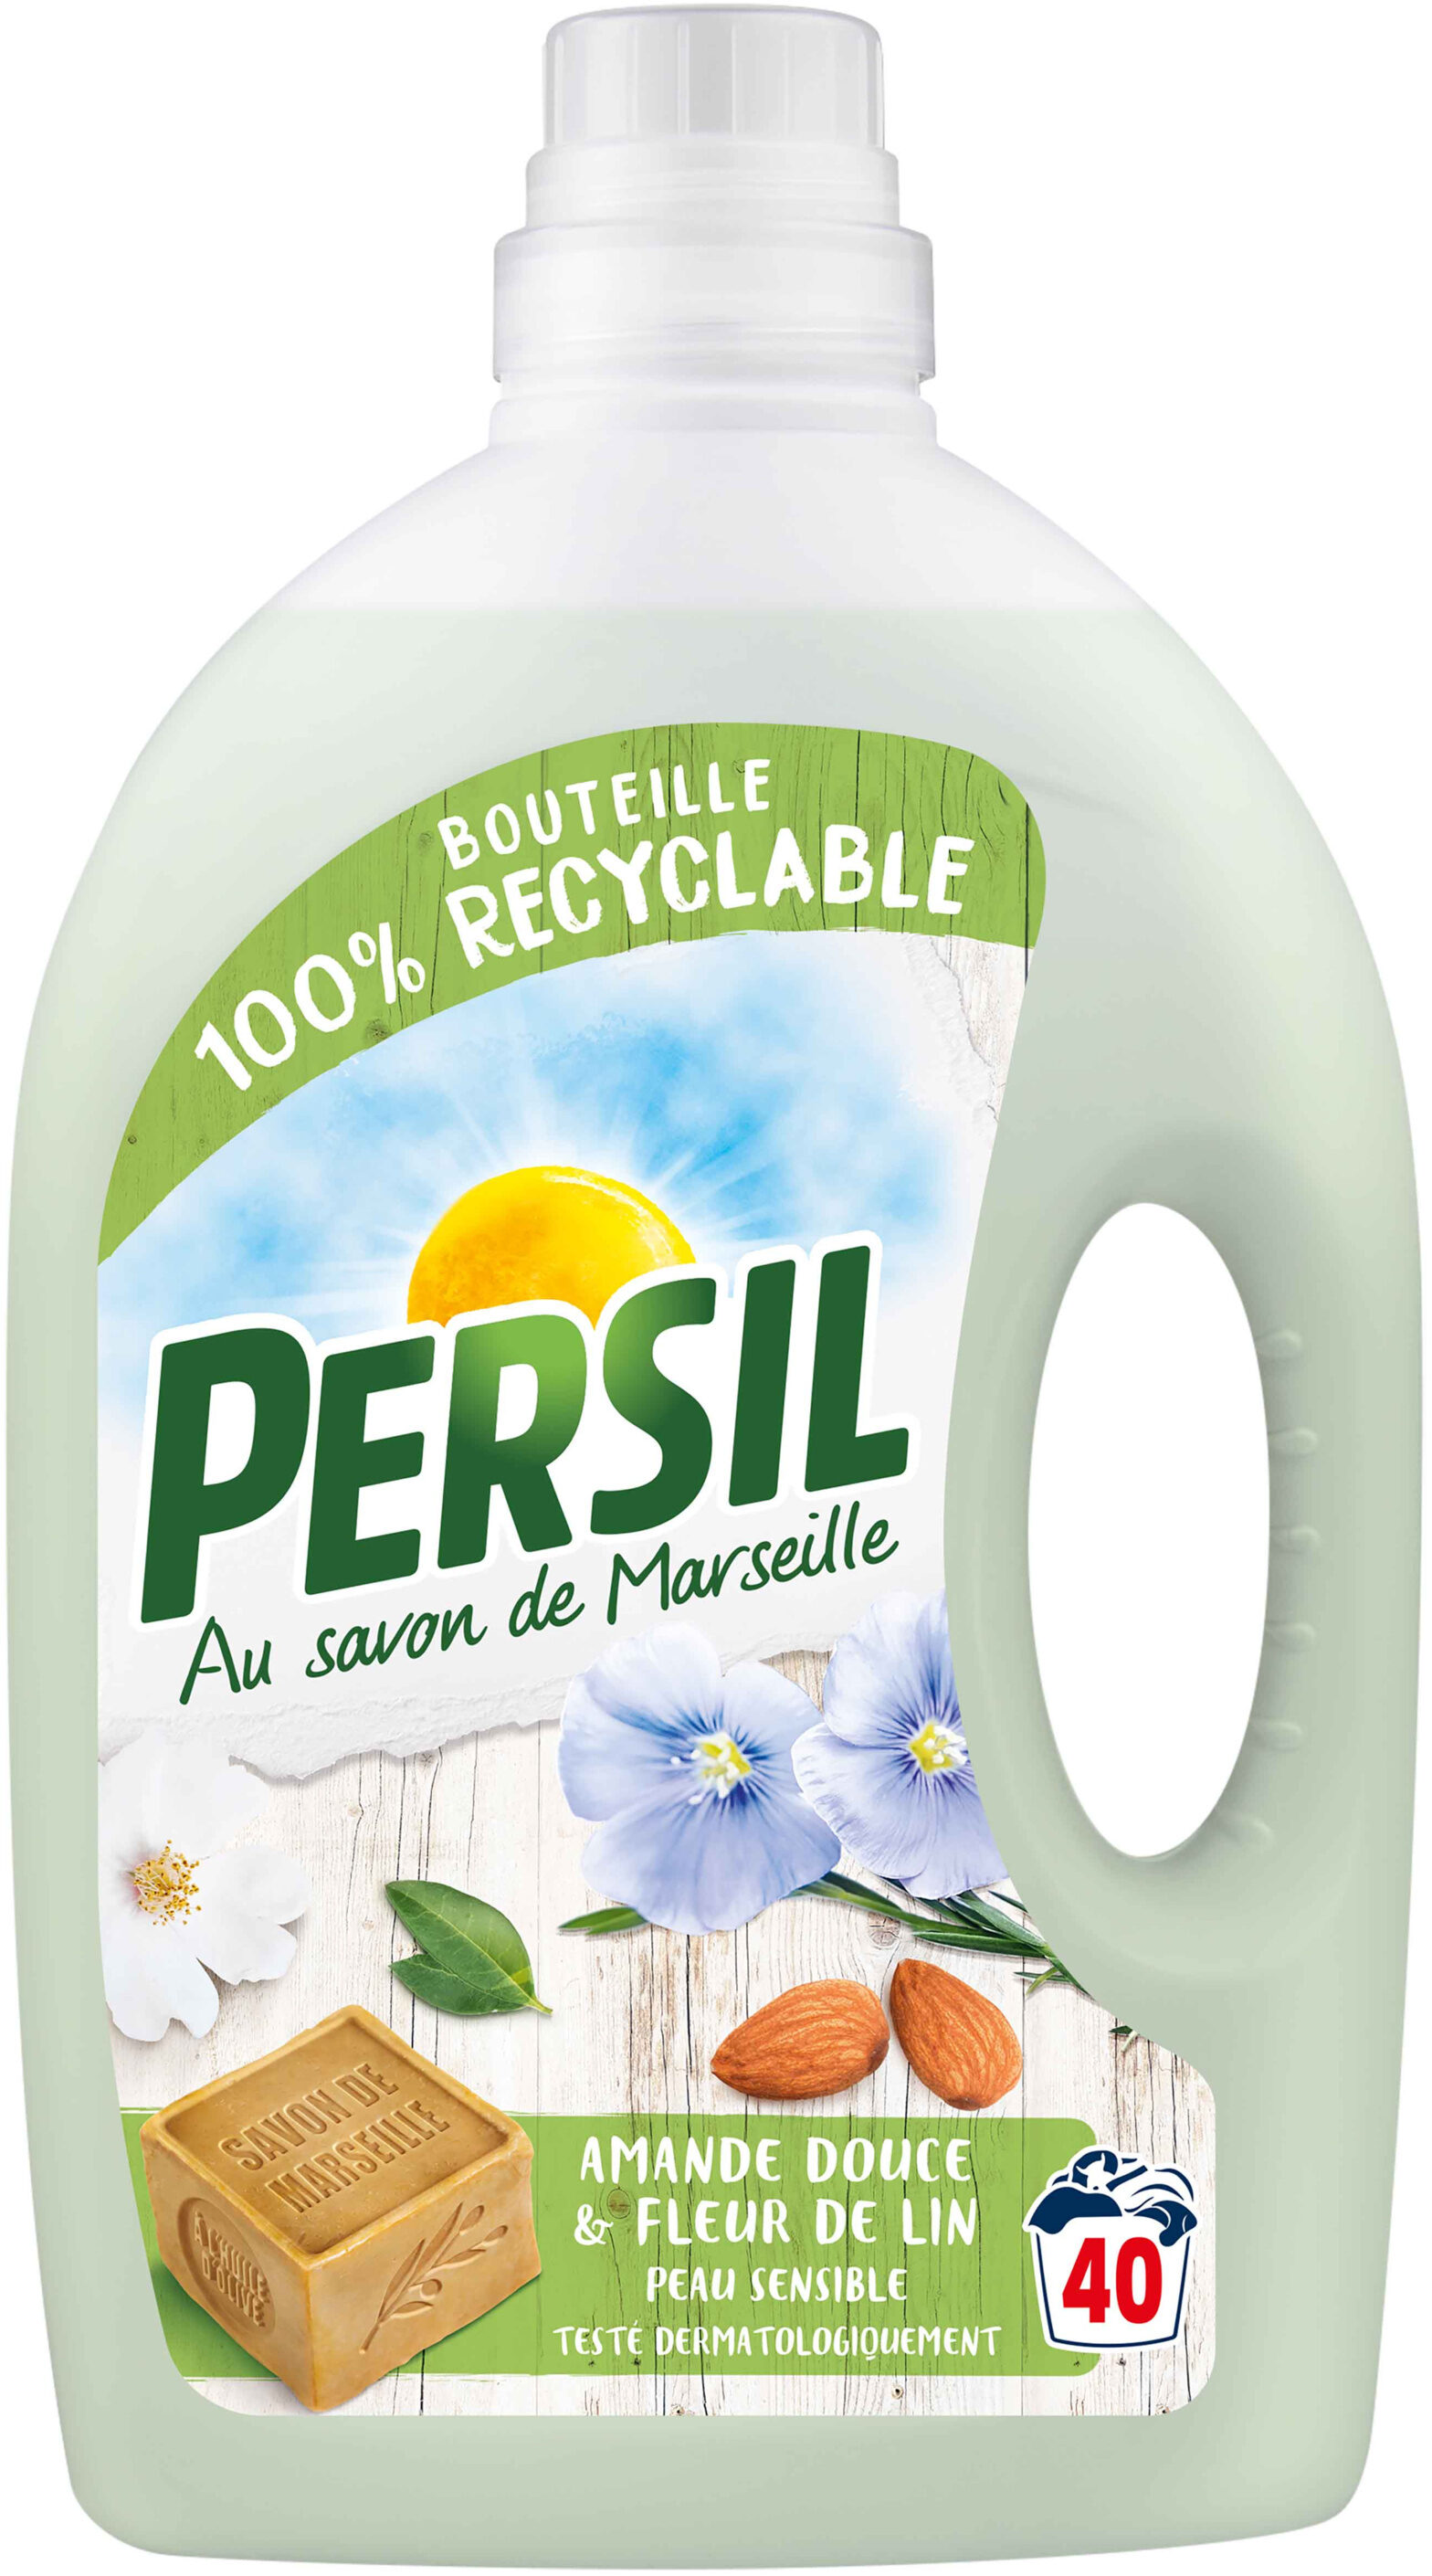 Persil Lessive Liquide Peau Sensible Amande Douce 2l 40 Lavages - Produto - fr